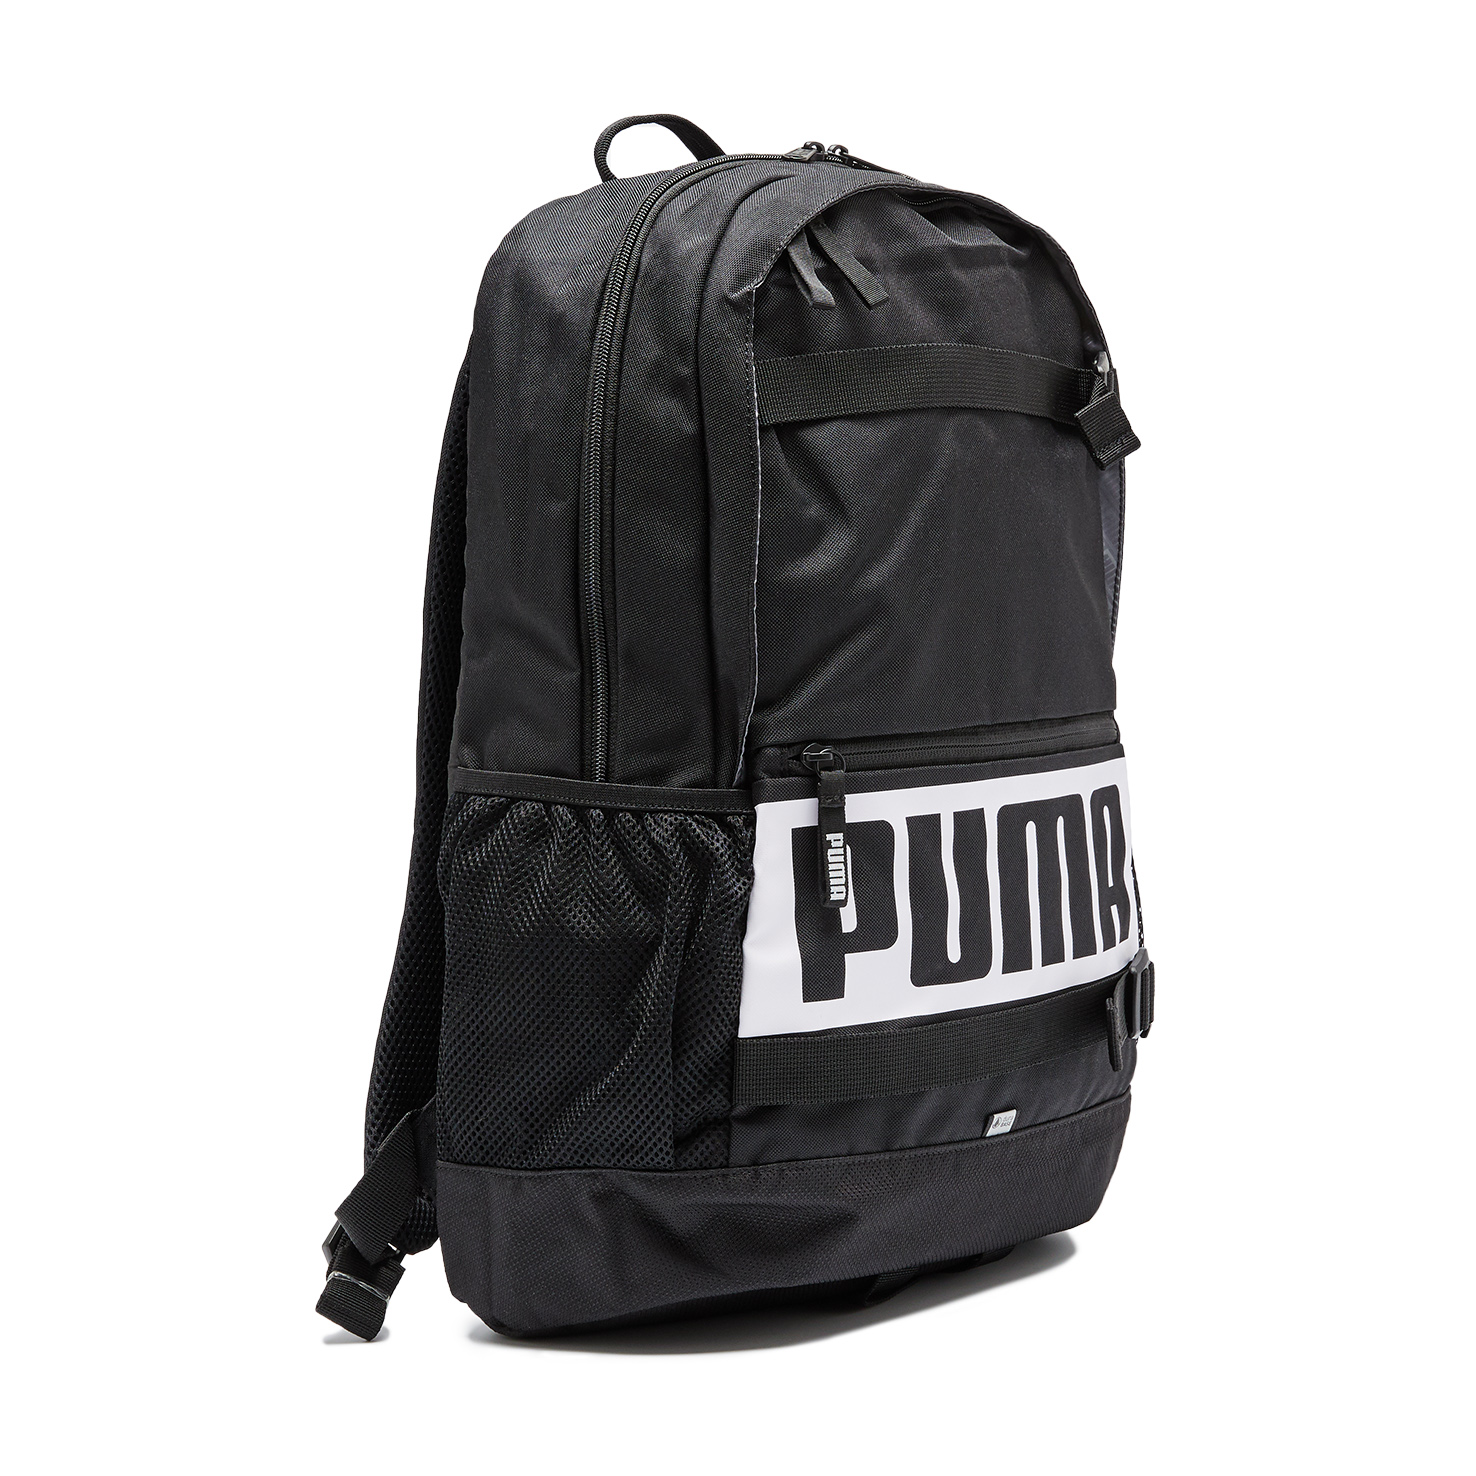 Deck Backpack PUMA, размер Один размер, цвет черный PM074706 - фото 3